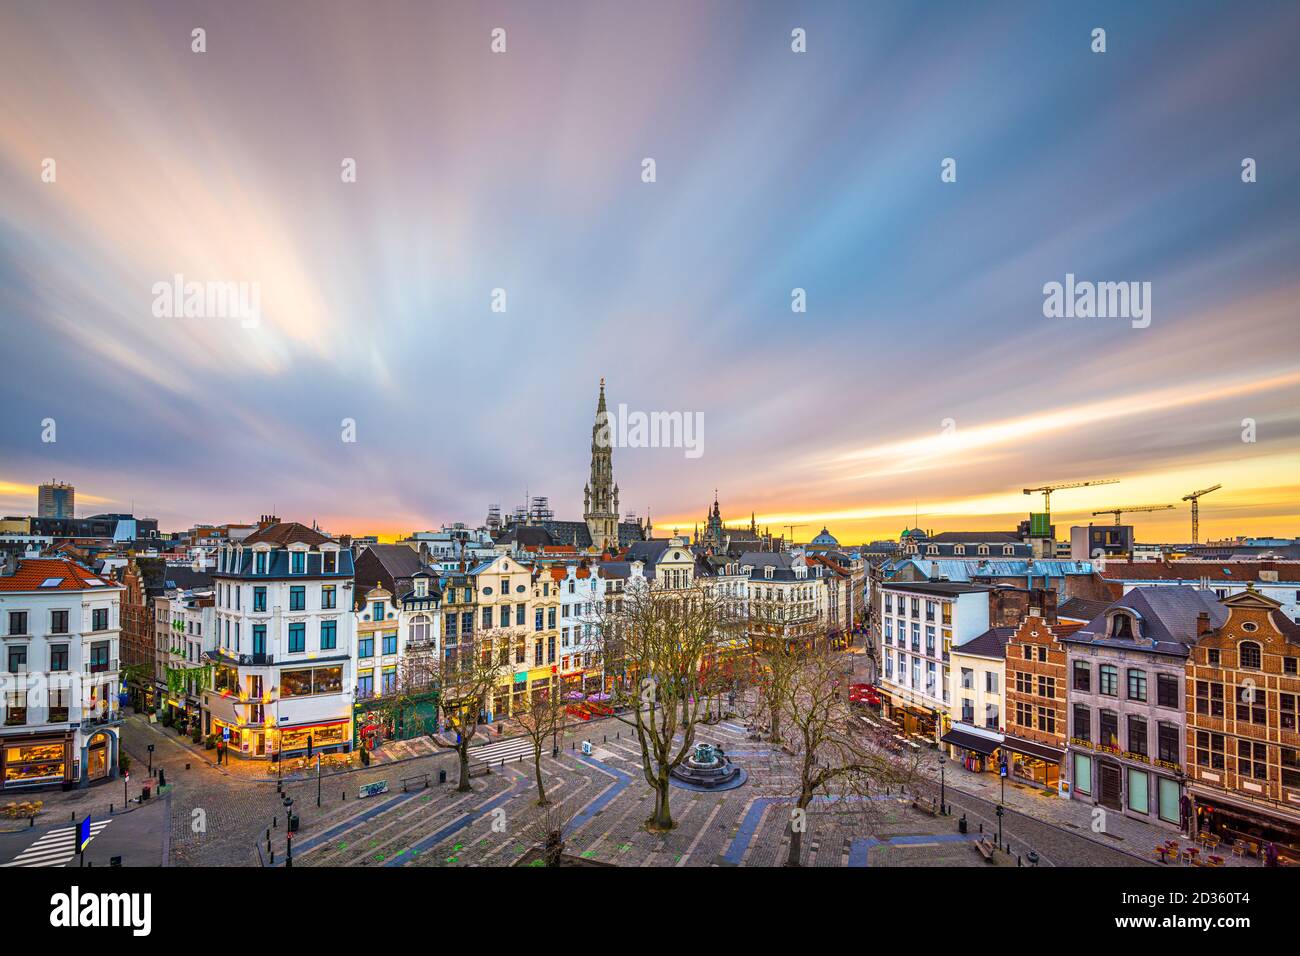 Brüssel, Belgium plaza und Skyline mit dem Rathausturm in der Abenddämmerung. Stockfoto